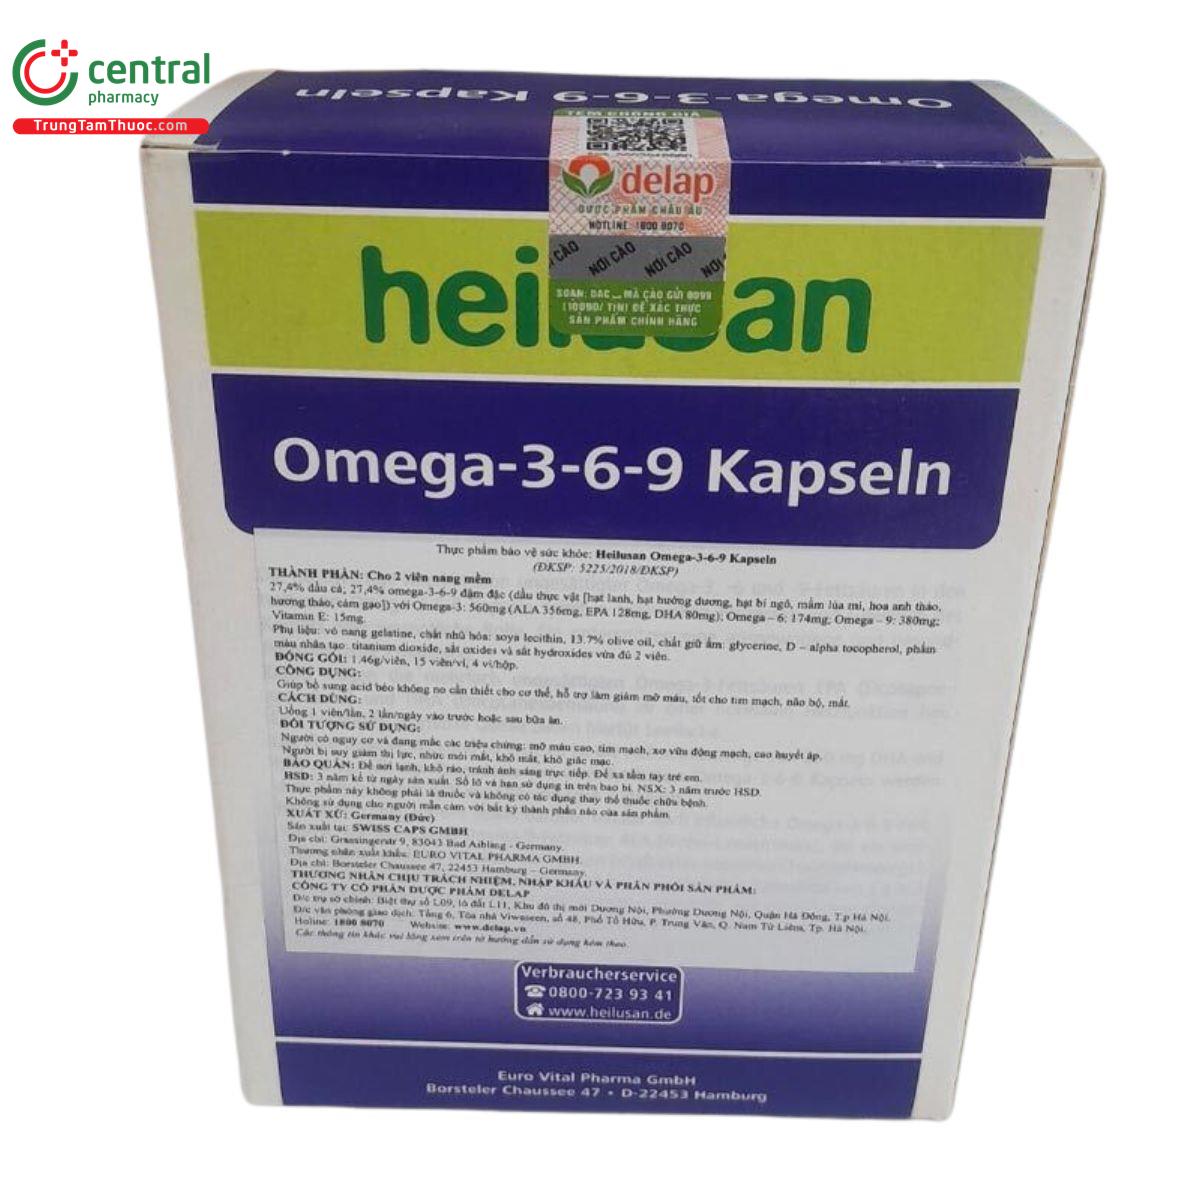 heilusan omega 3 6 9 kapseln 11 C1317